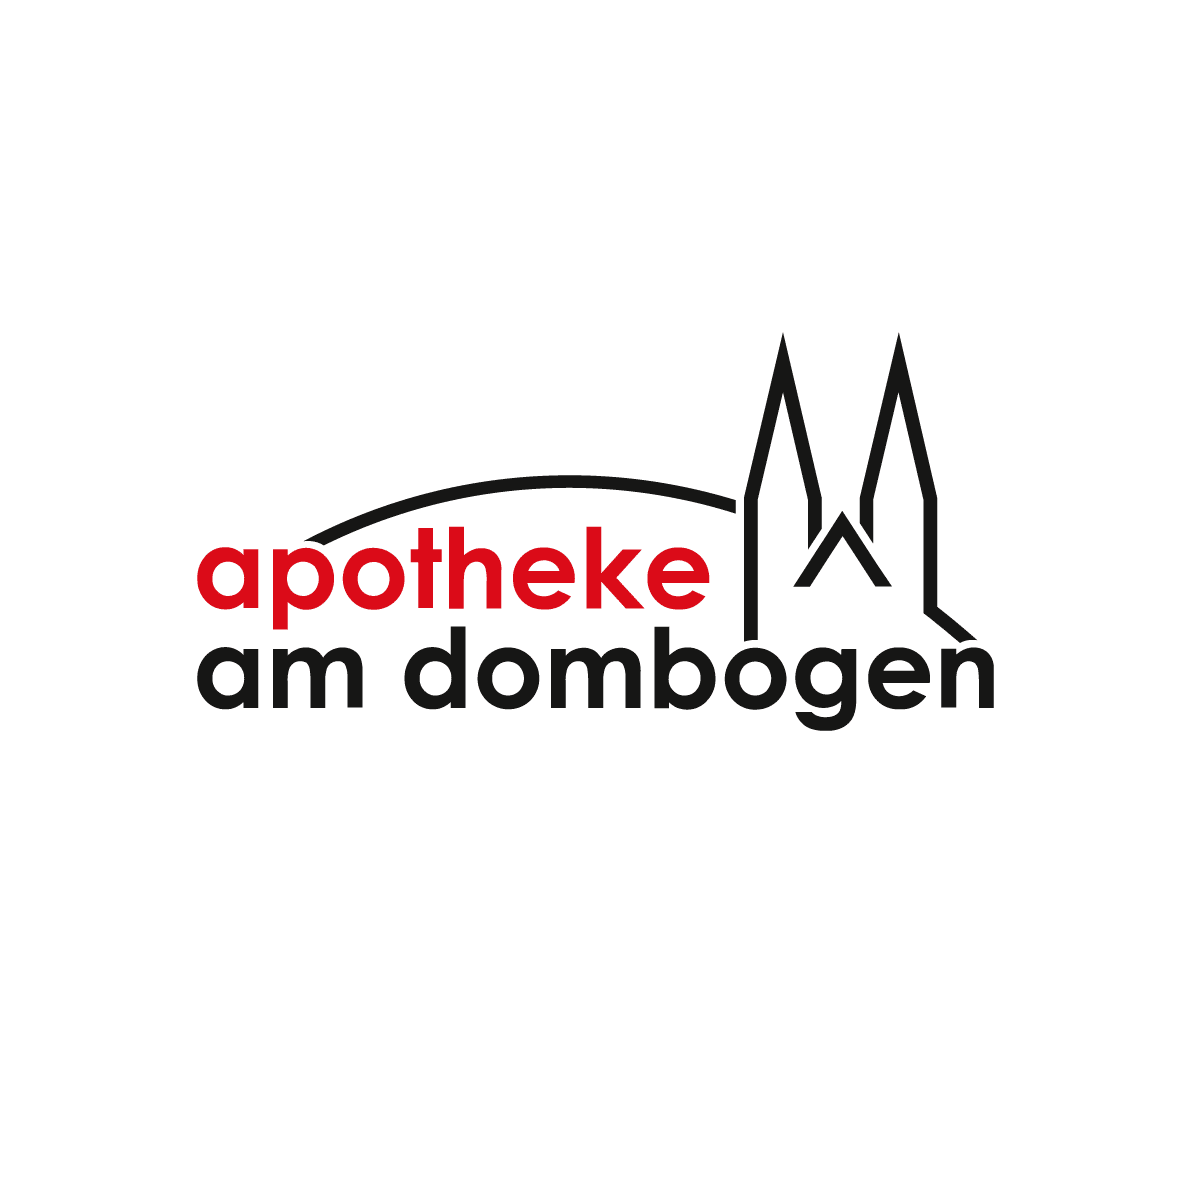 (c) Apotheke-am-dombogen.de